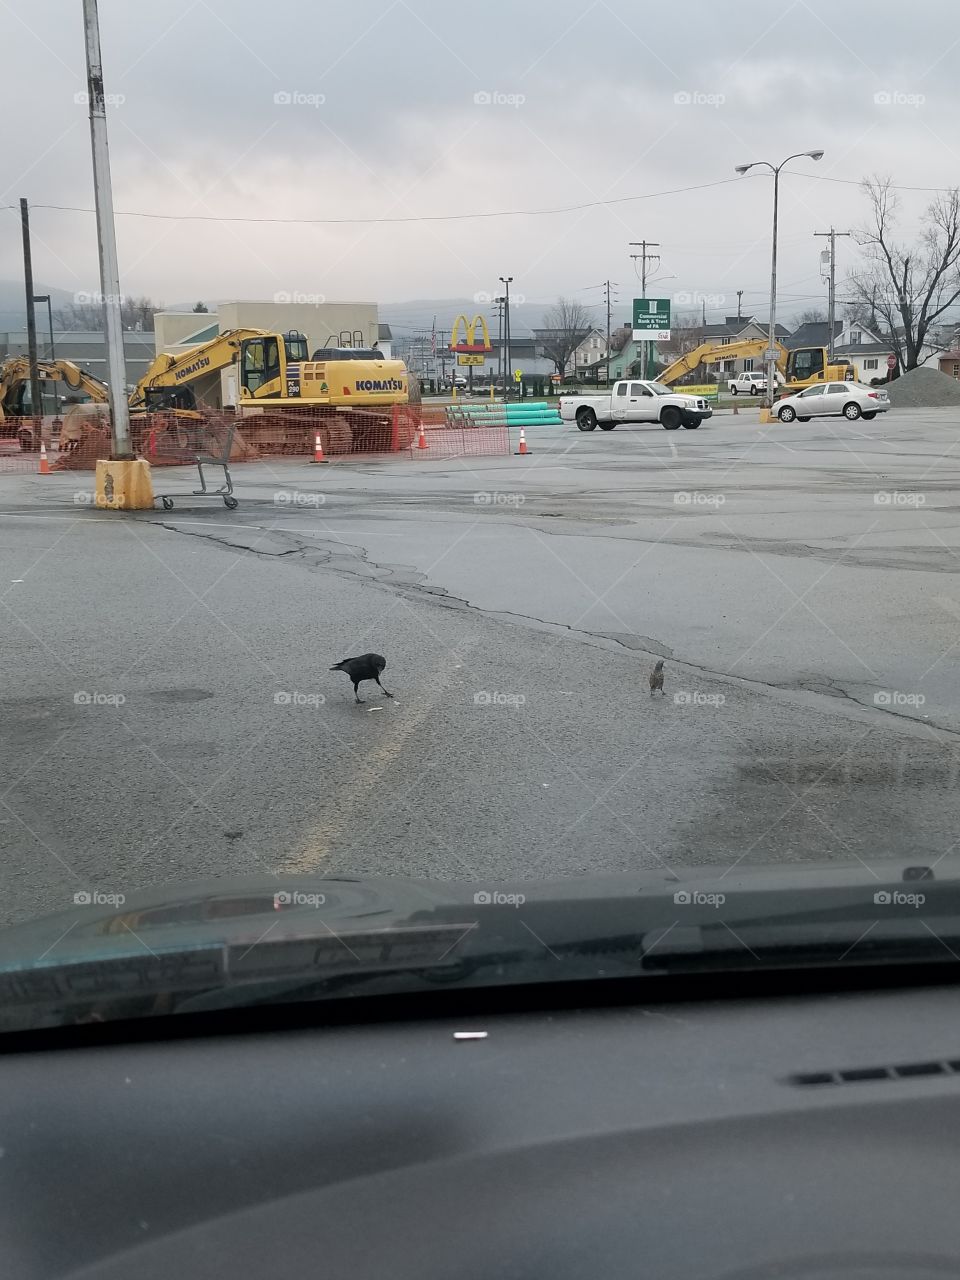 Parking lot under construction.